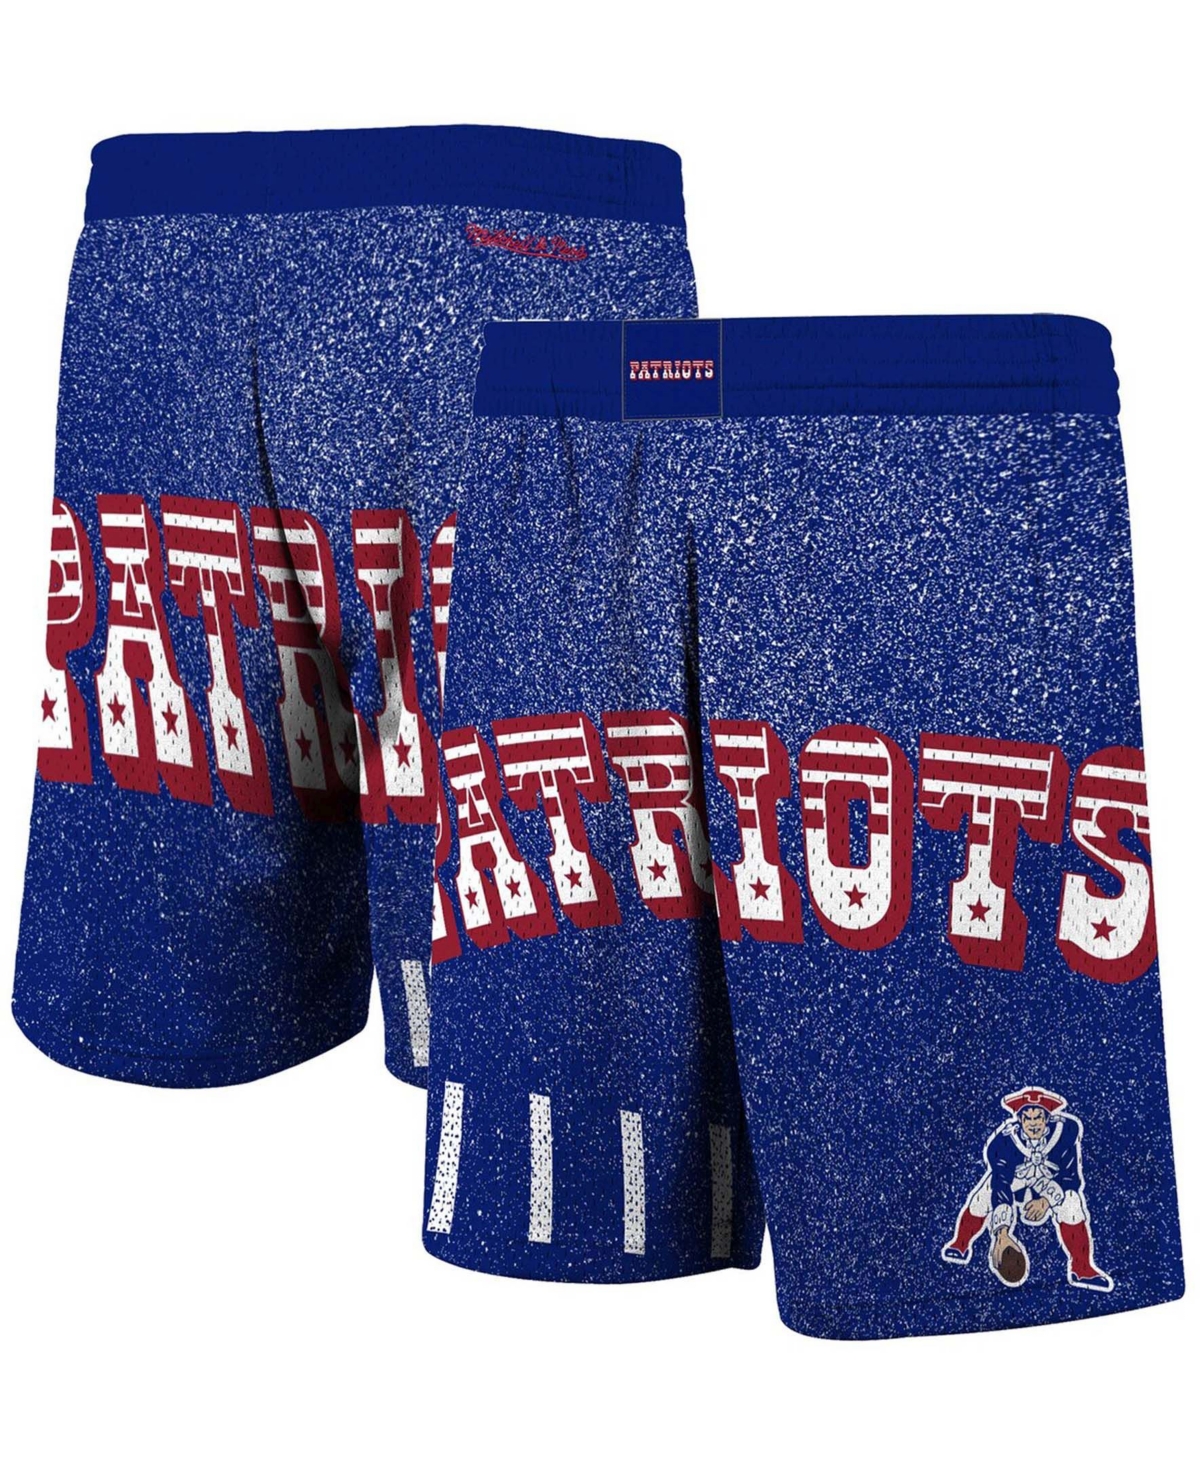 Men's Royal New England Patriots Jumbotron Shorts - Royal